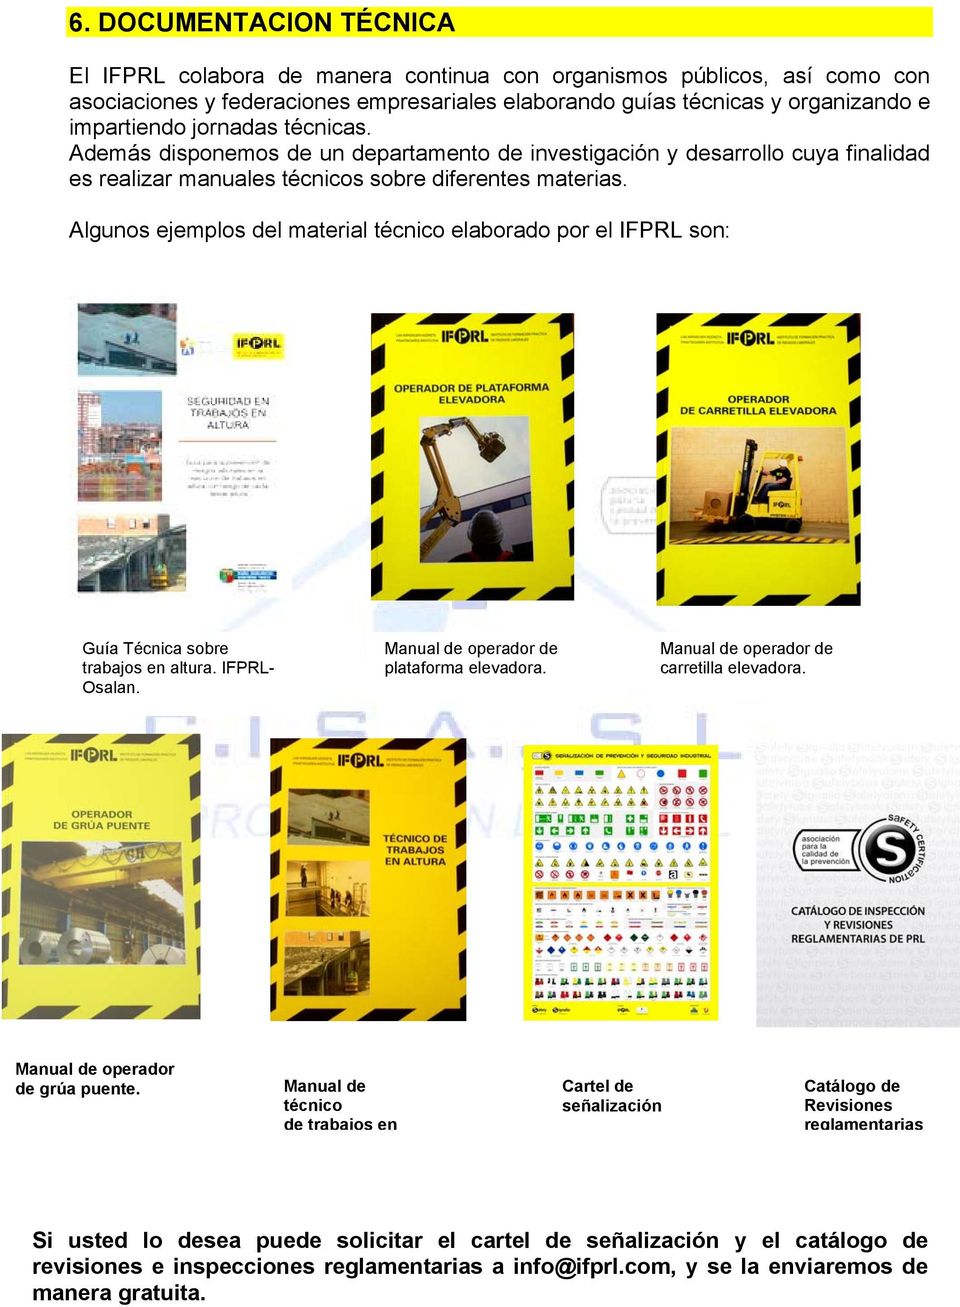 Algunos ejemplos del material técnico elaborado por el IFPRL son: Guía Técnica sobre trabajos en altura. IFPRL- Osalan. Manual de operador de plataforma elevadora.